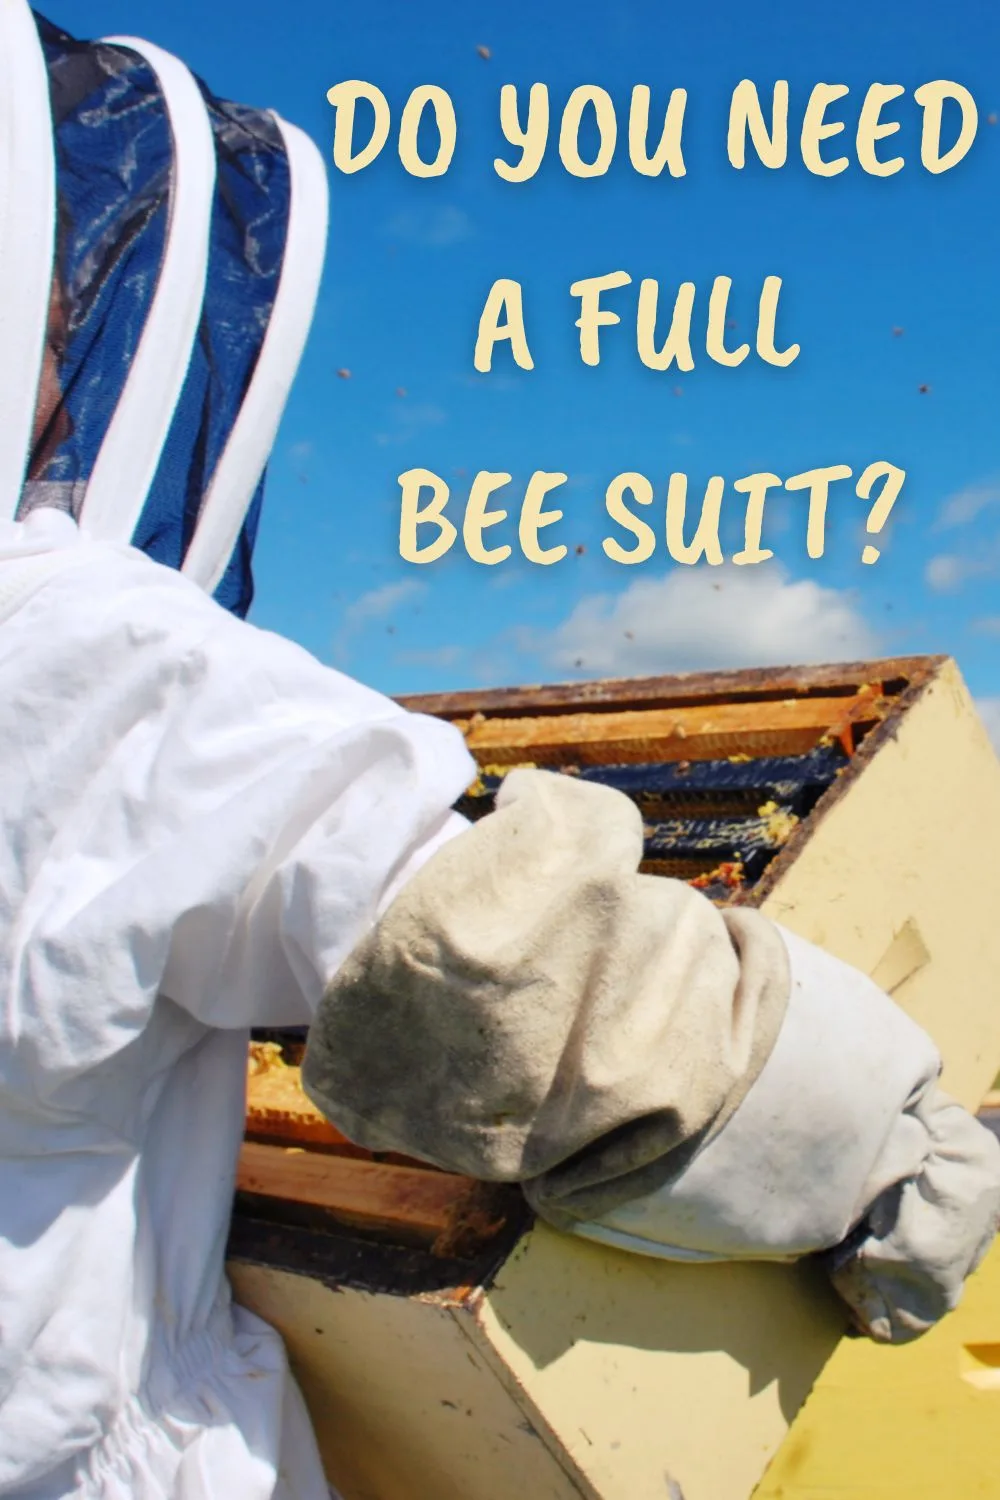 Χρειάζεστε ένα πλήρες κοστούμι μέλισσας;